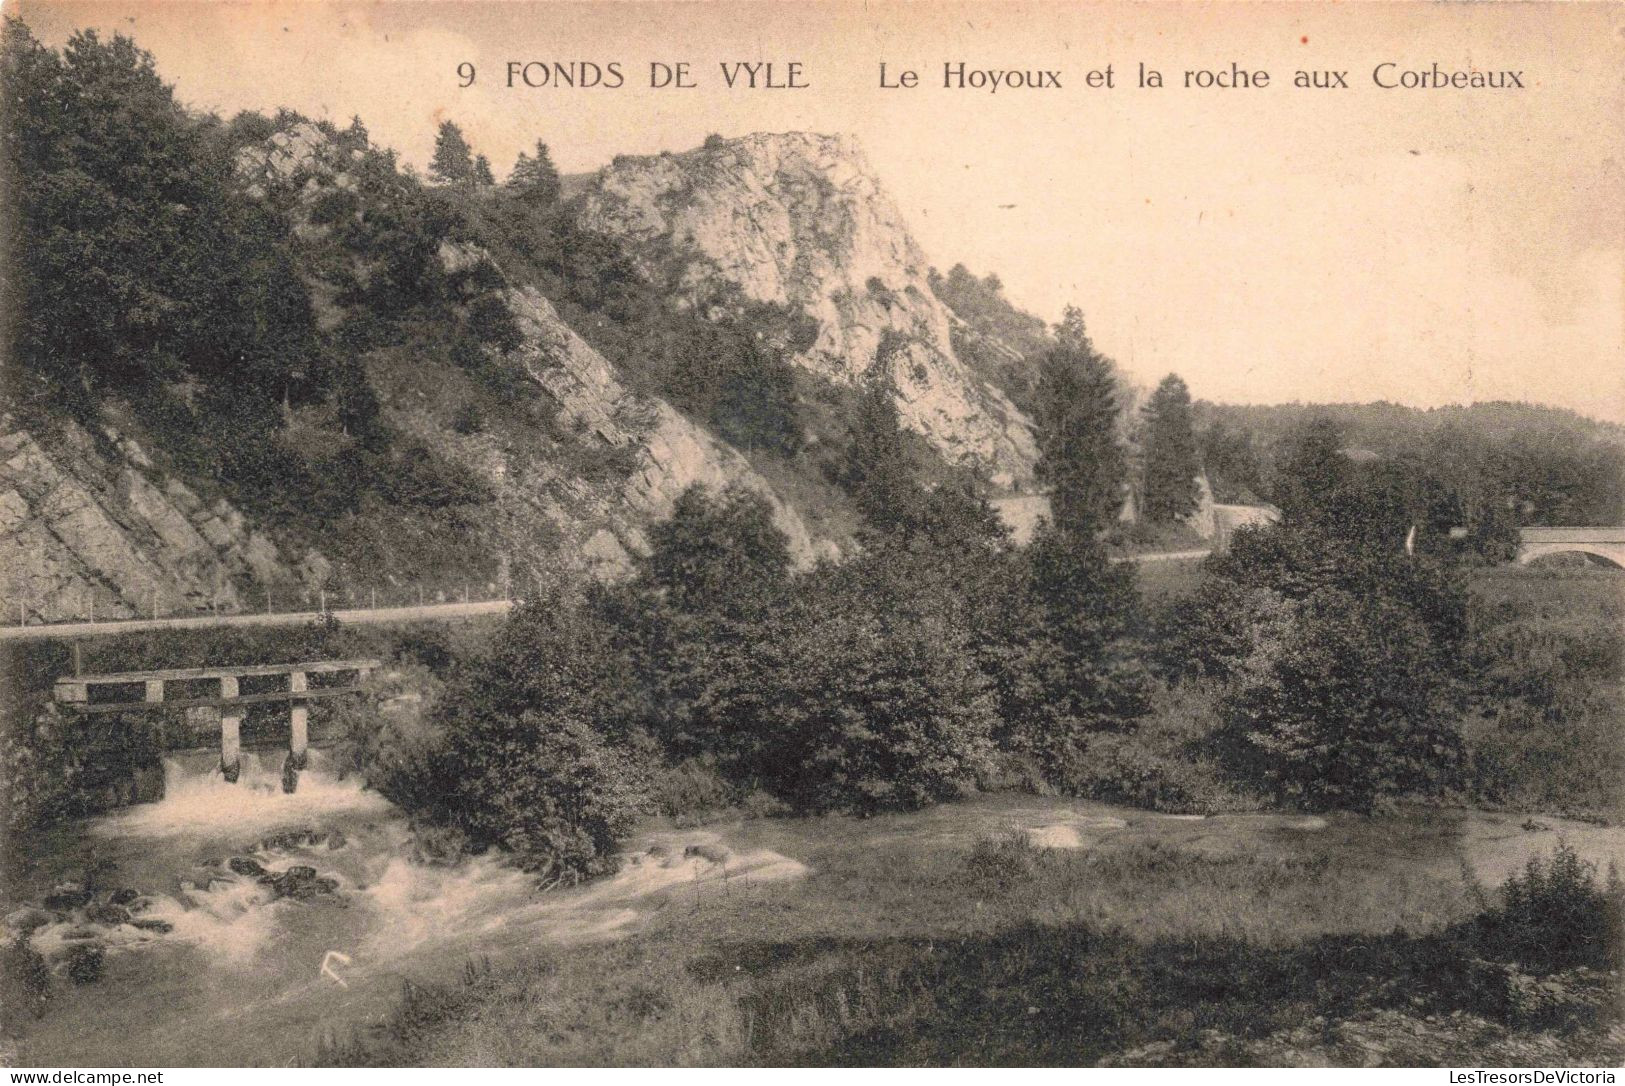 BELGIQUE - FONDS DE VYLE - Le Hoyoux Et La Roche Aux Corbeaux - Carte Postale Ancienne - Huy